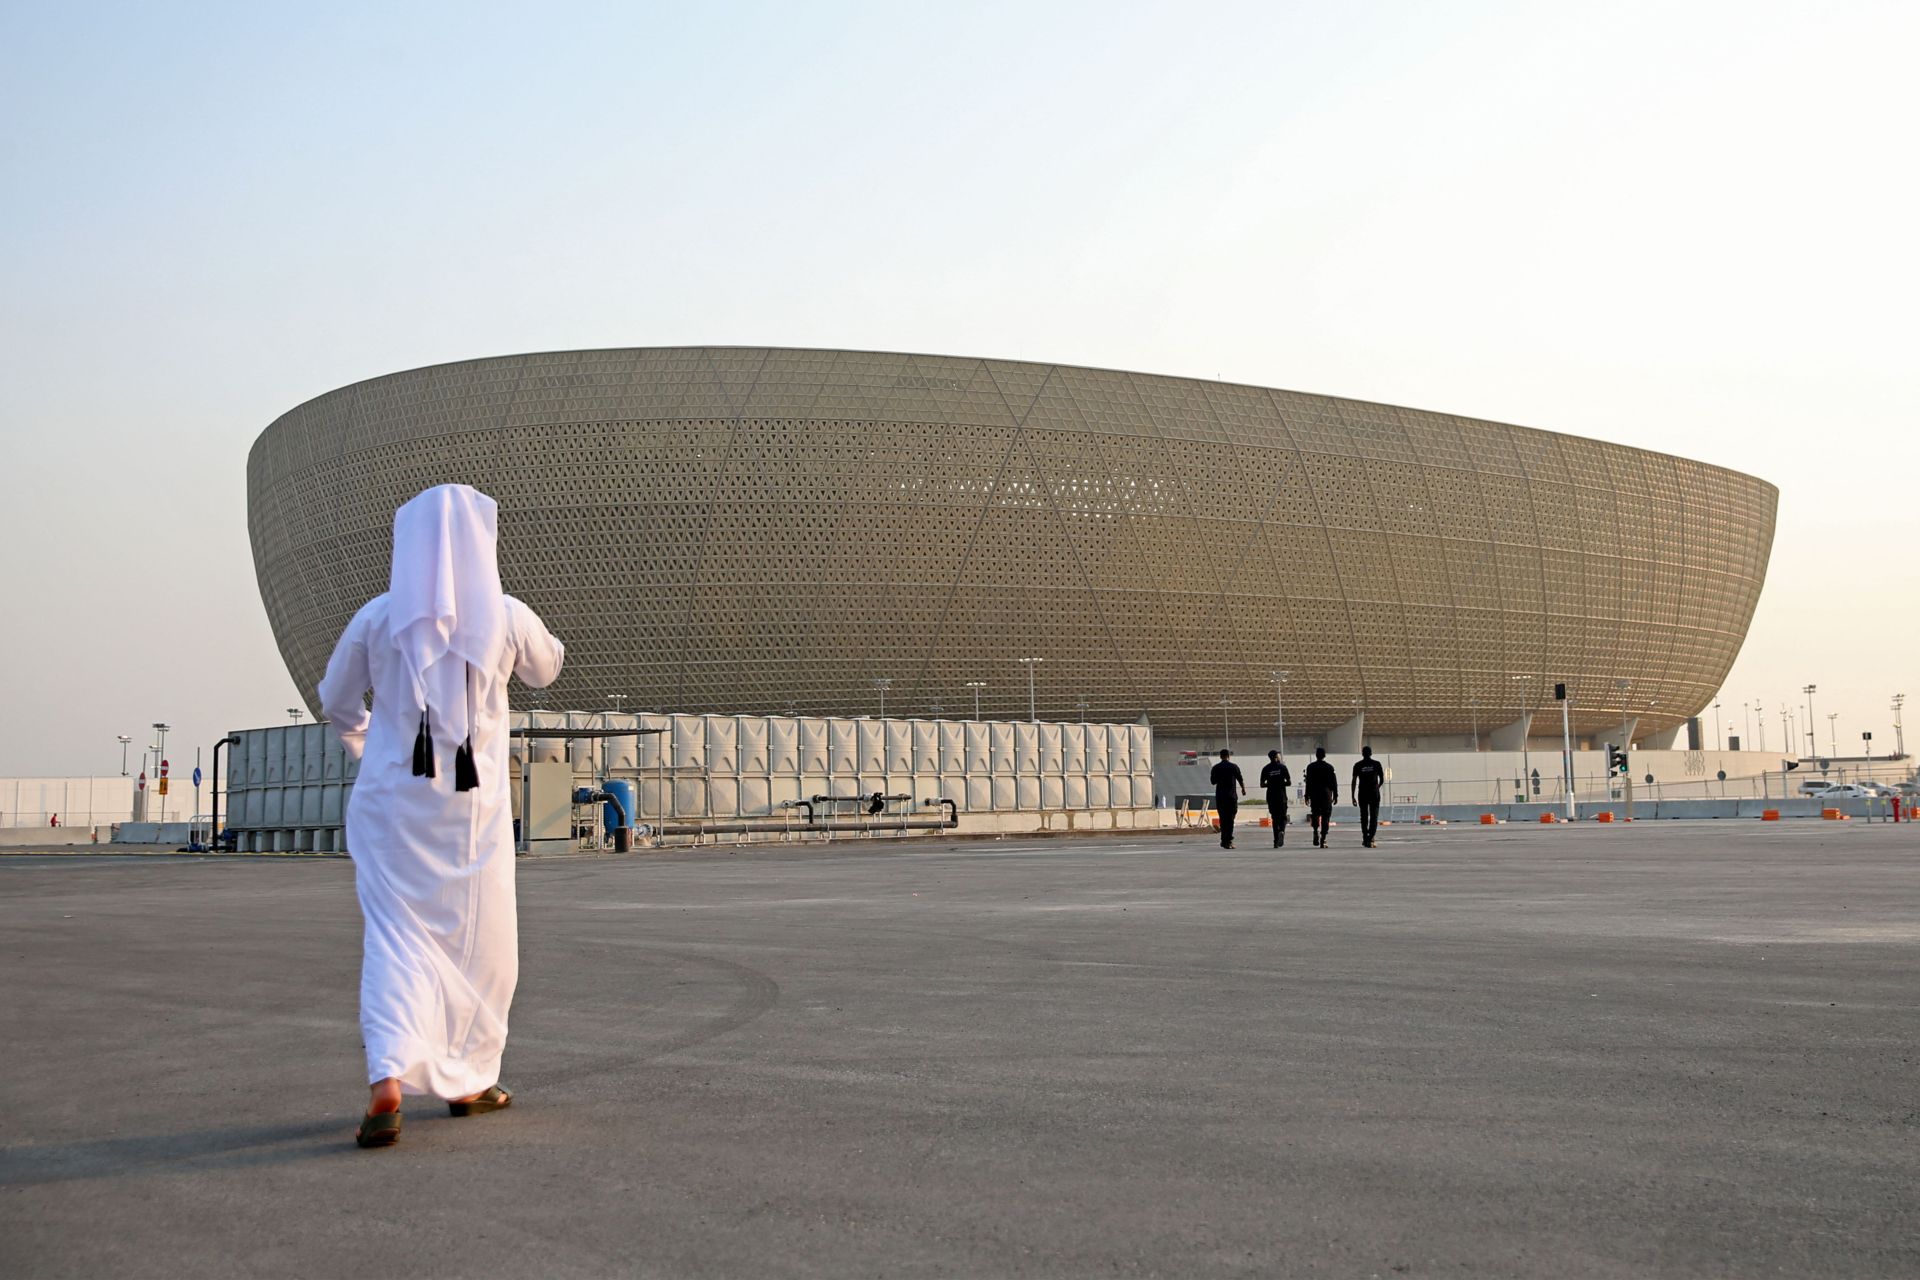 Ngày hội bóng đá thế giới năm 2022 sẽ diễn ra tại Qatar